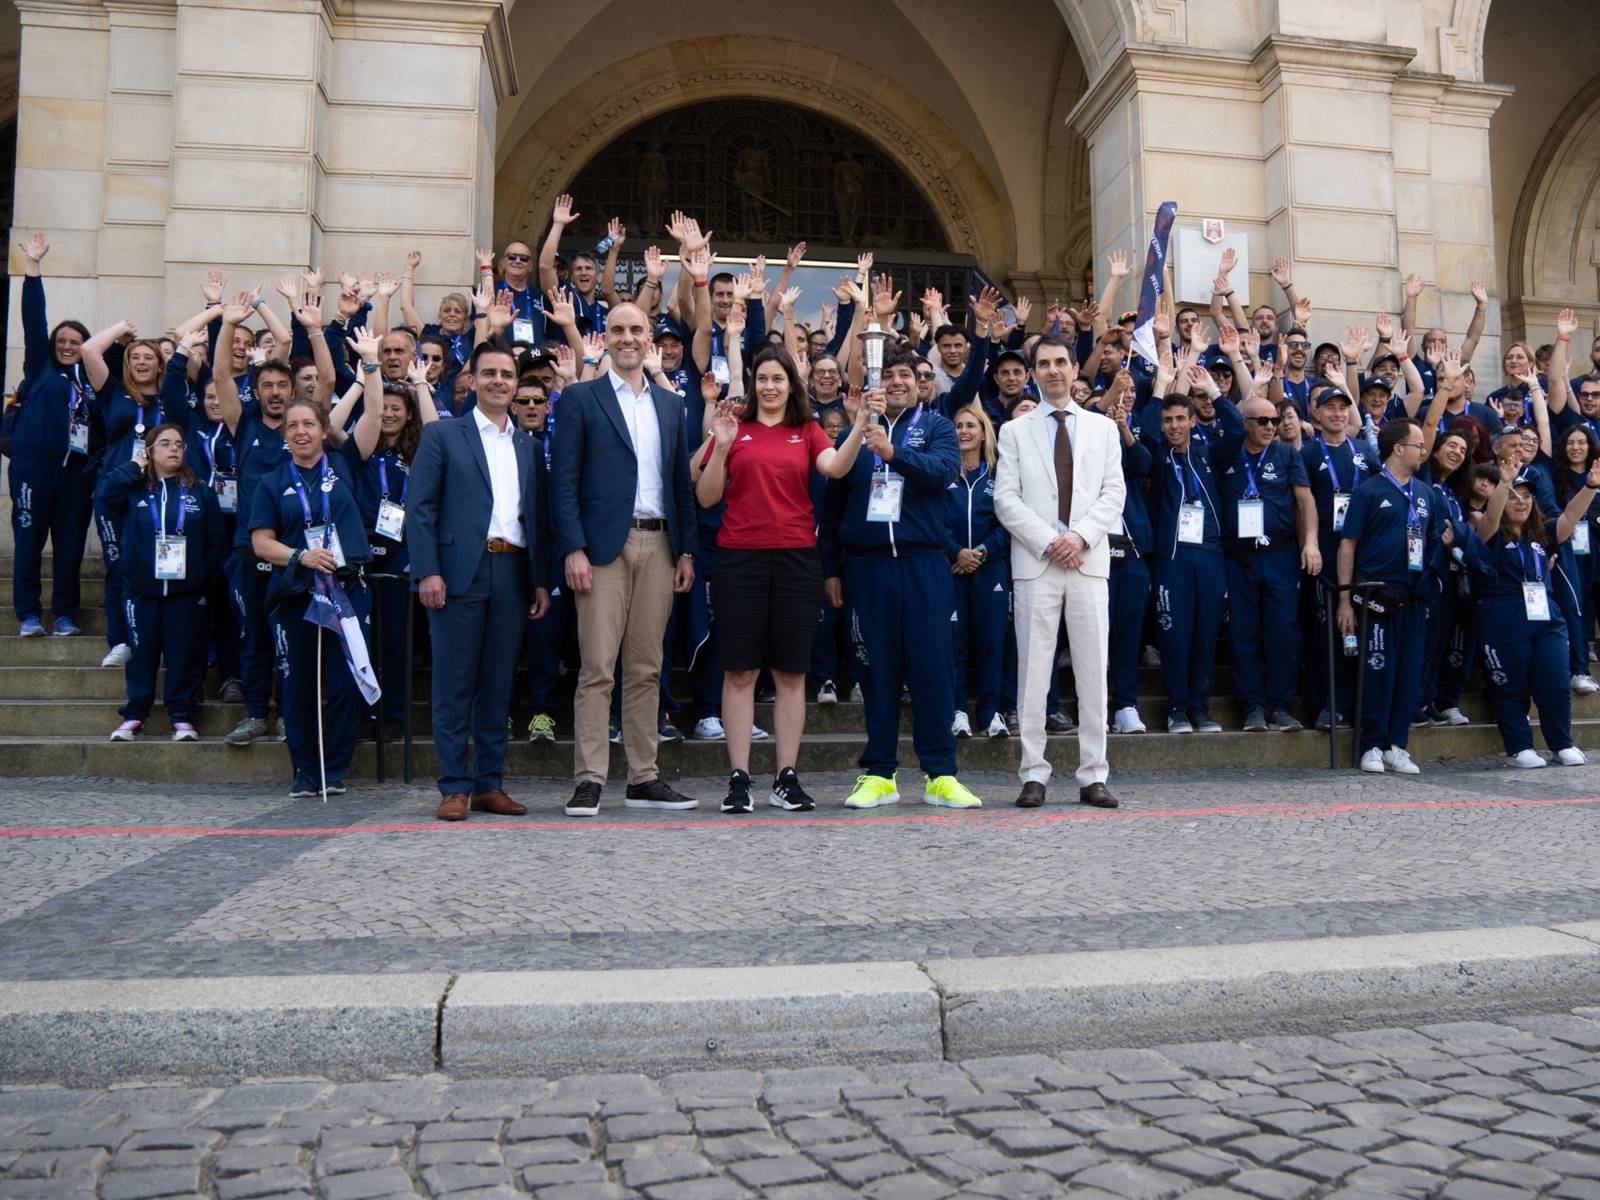 Gruppenfoto mit zwei Fackel-Träger:innen auf der Treppe vor dem Neuen Rathaus: Die Landeshauptstadt Hannover hat als Host-Town die Delegation der Special Olympics empfangen.